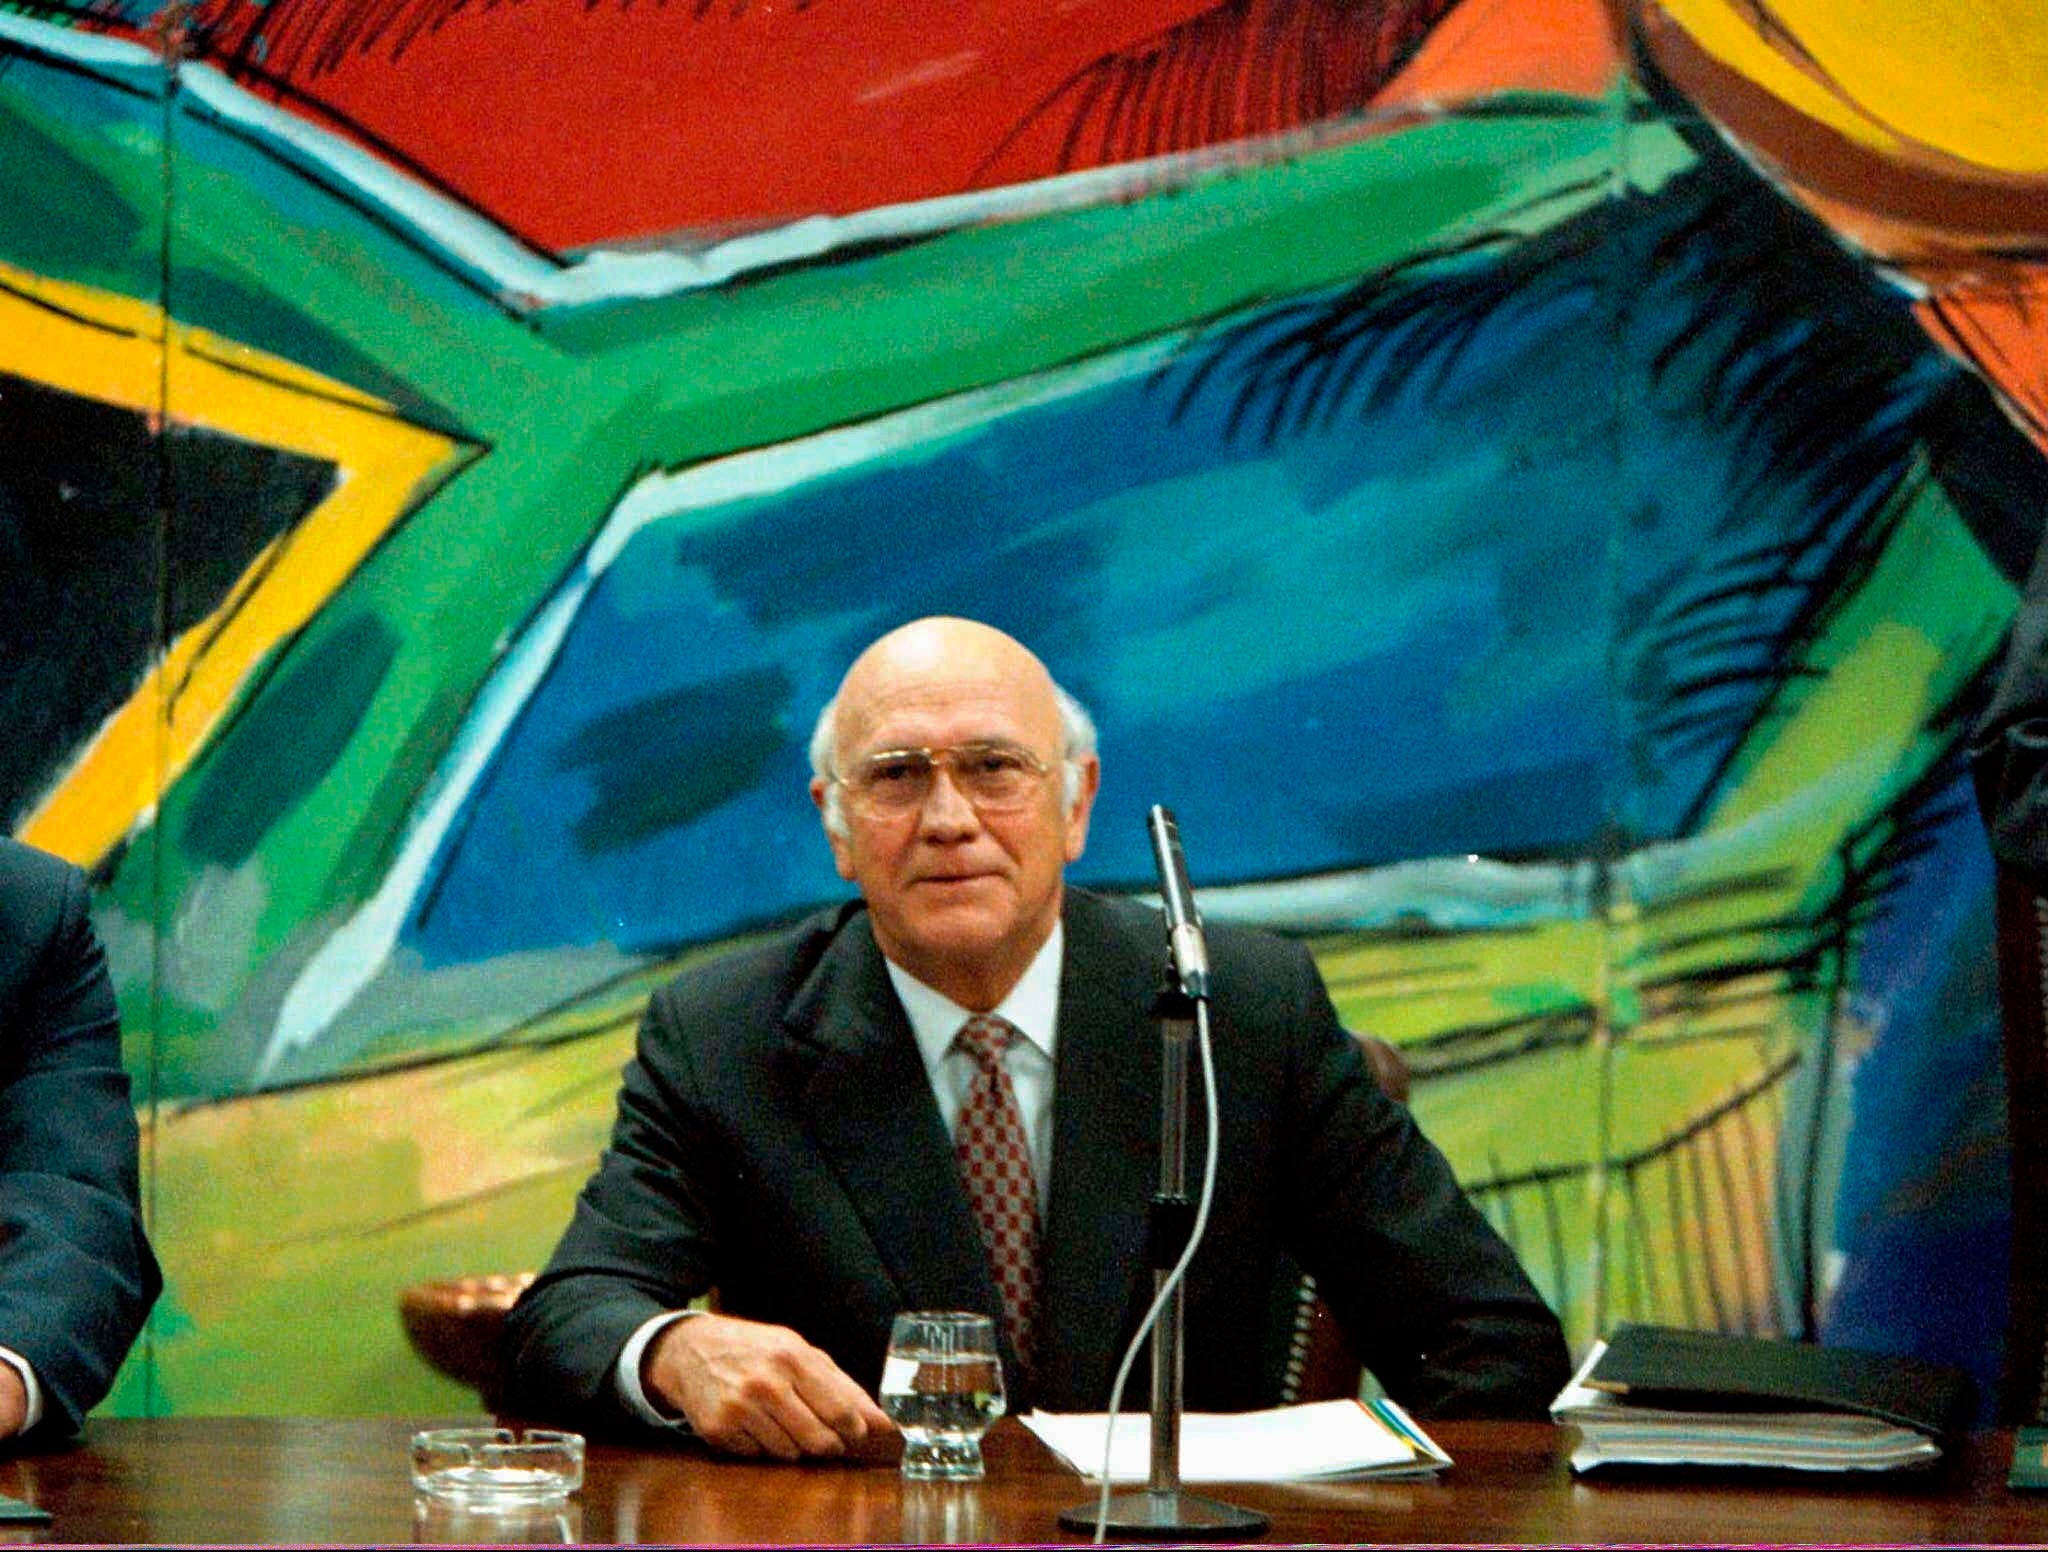 FW De Klerk was the last white leader of South Africa